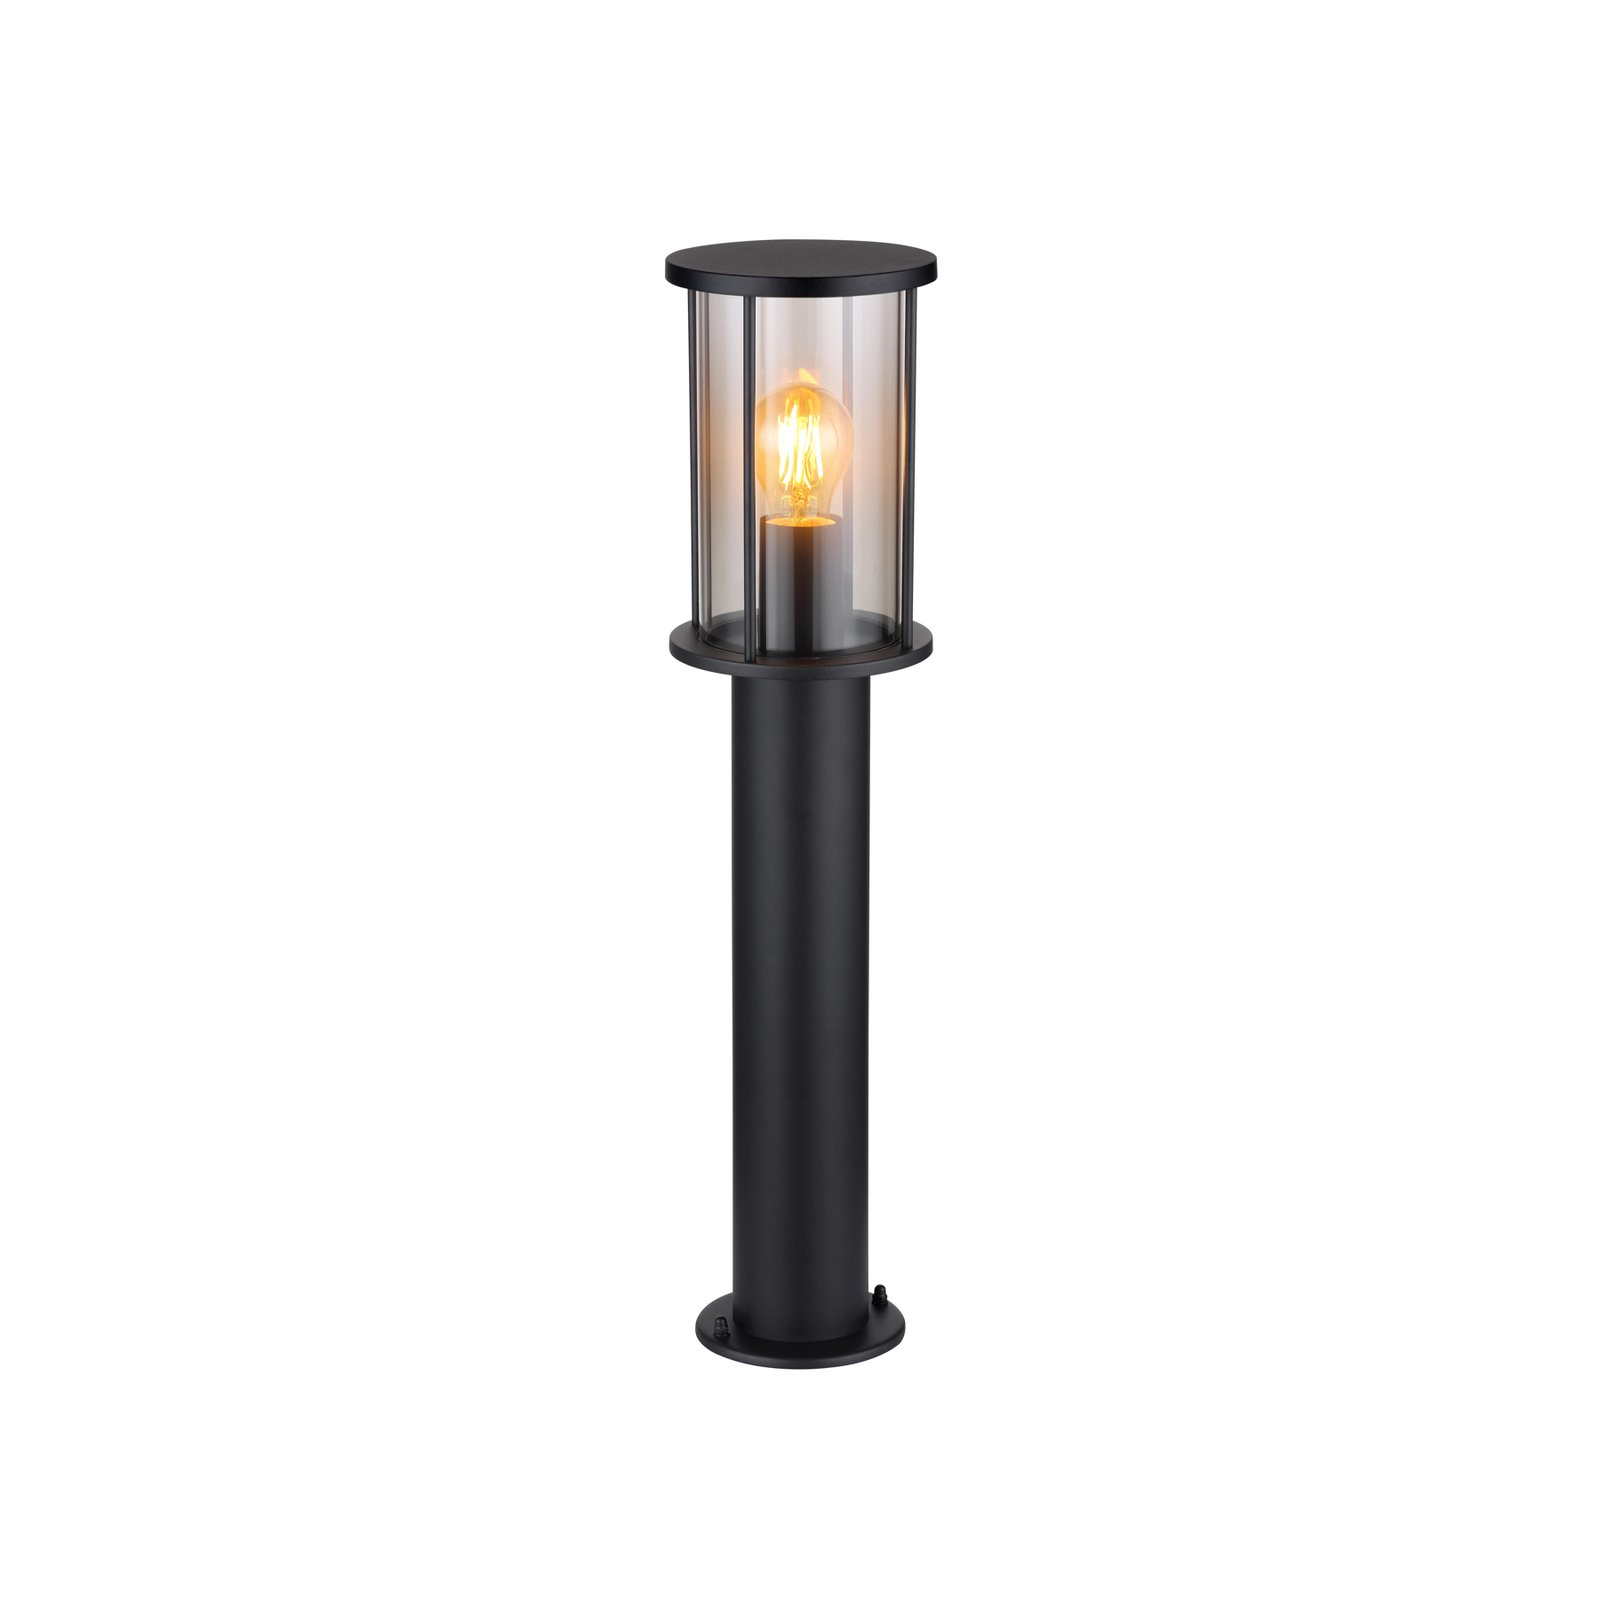 Gracey állólámpa, magasság 60 cm, fekete, rozsdamentes acél, IP54